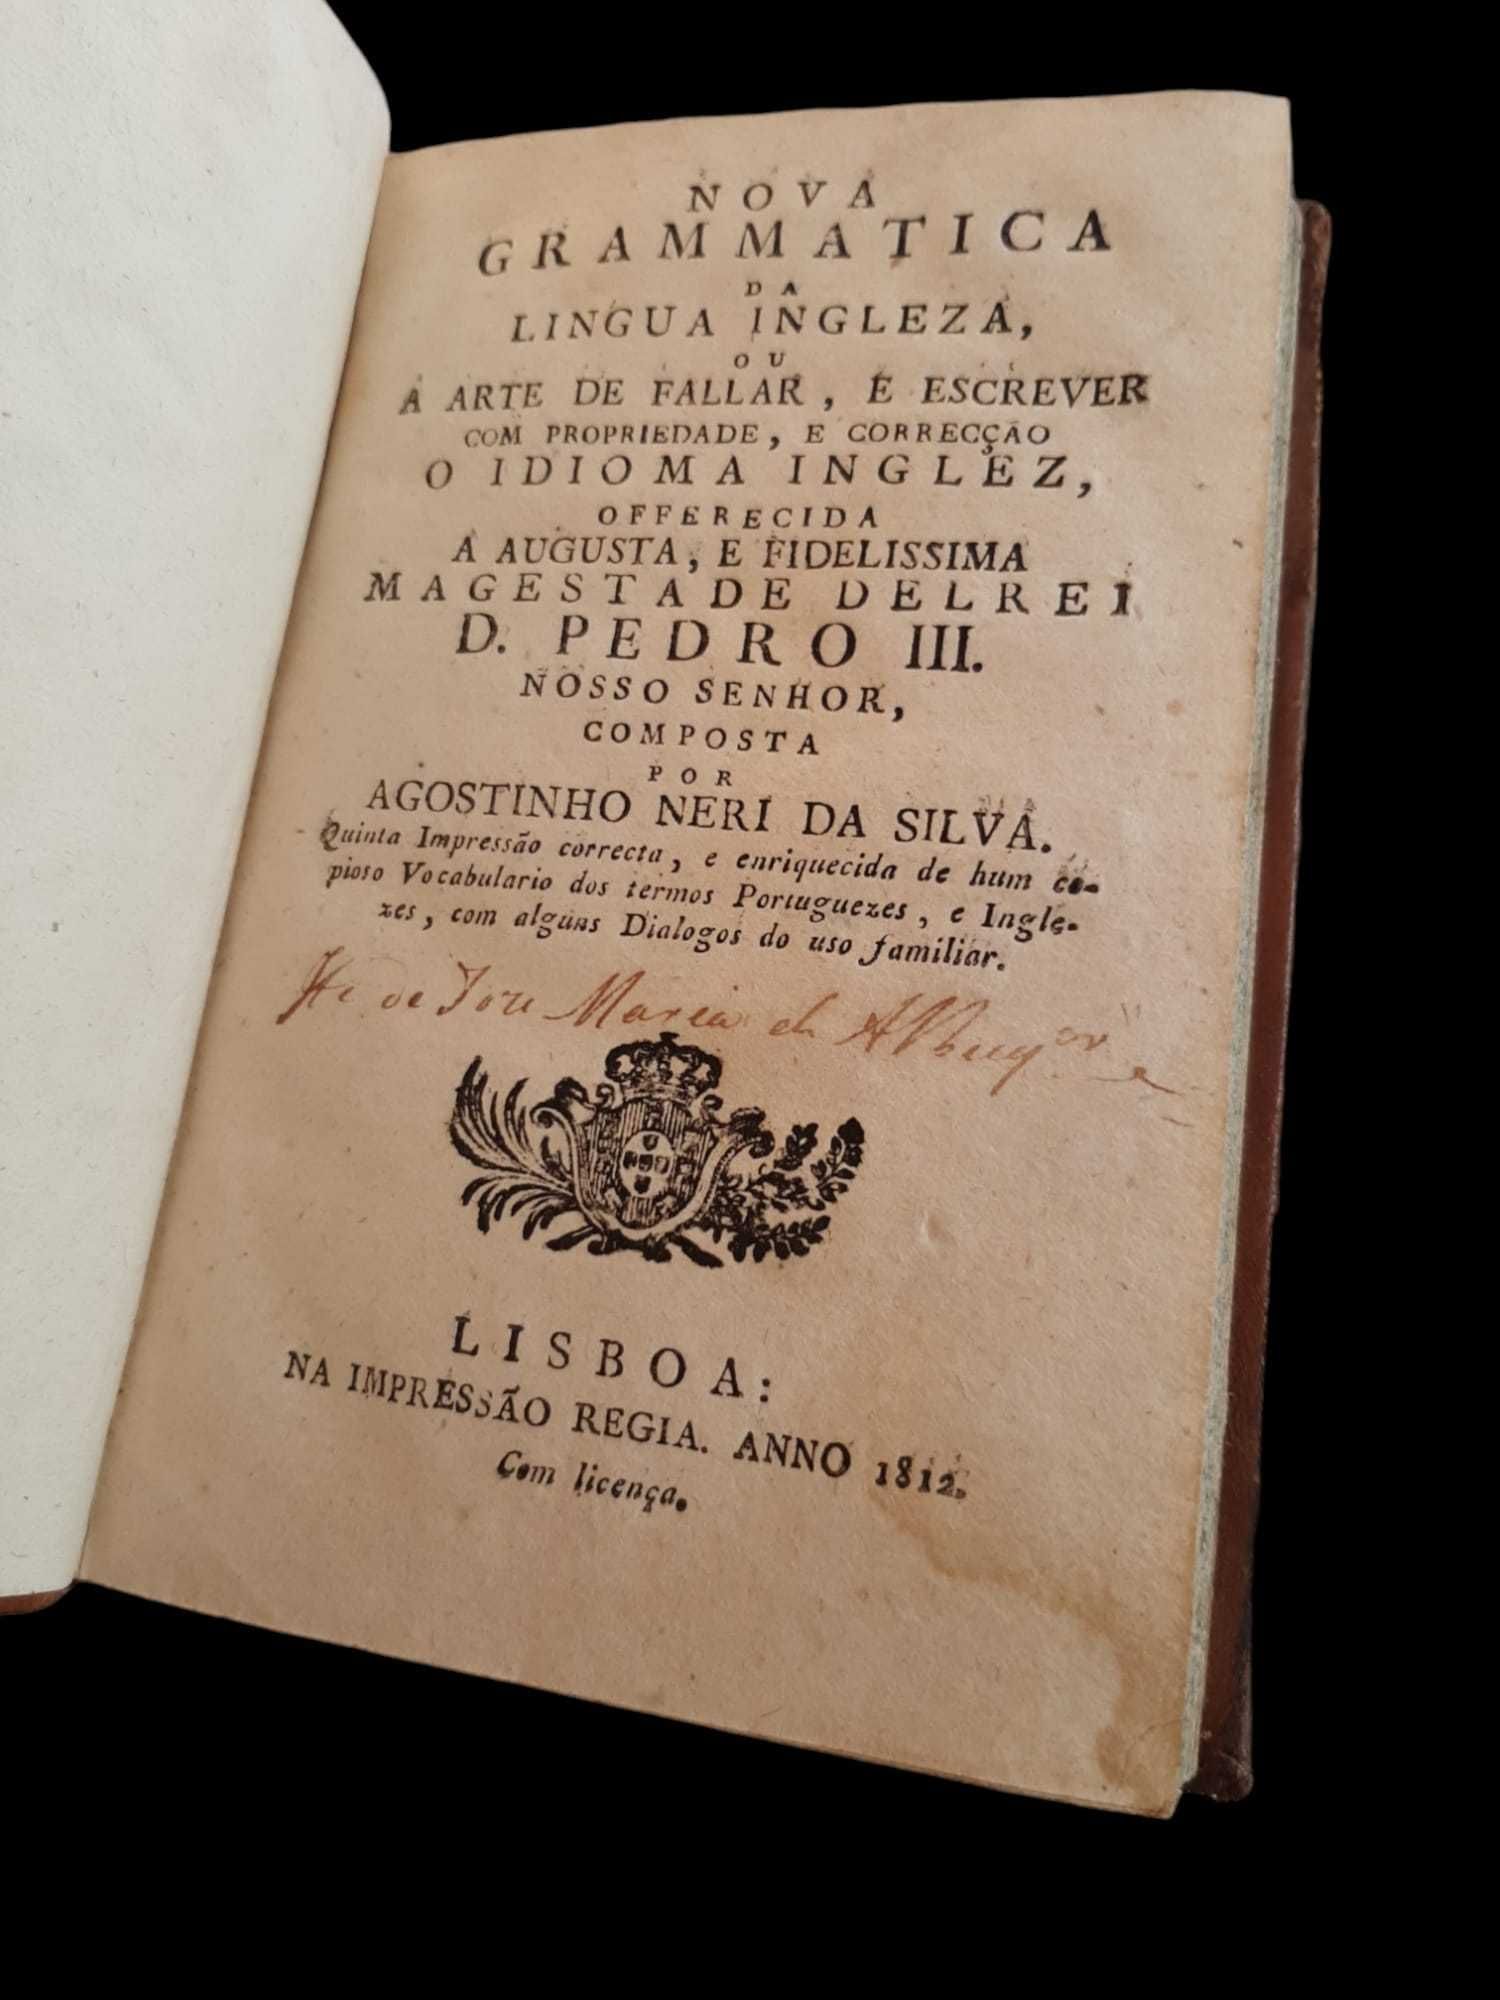 Livro Nova Grammatica da Lingua Ingleza ou A Arte de Fallar - 1812